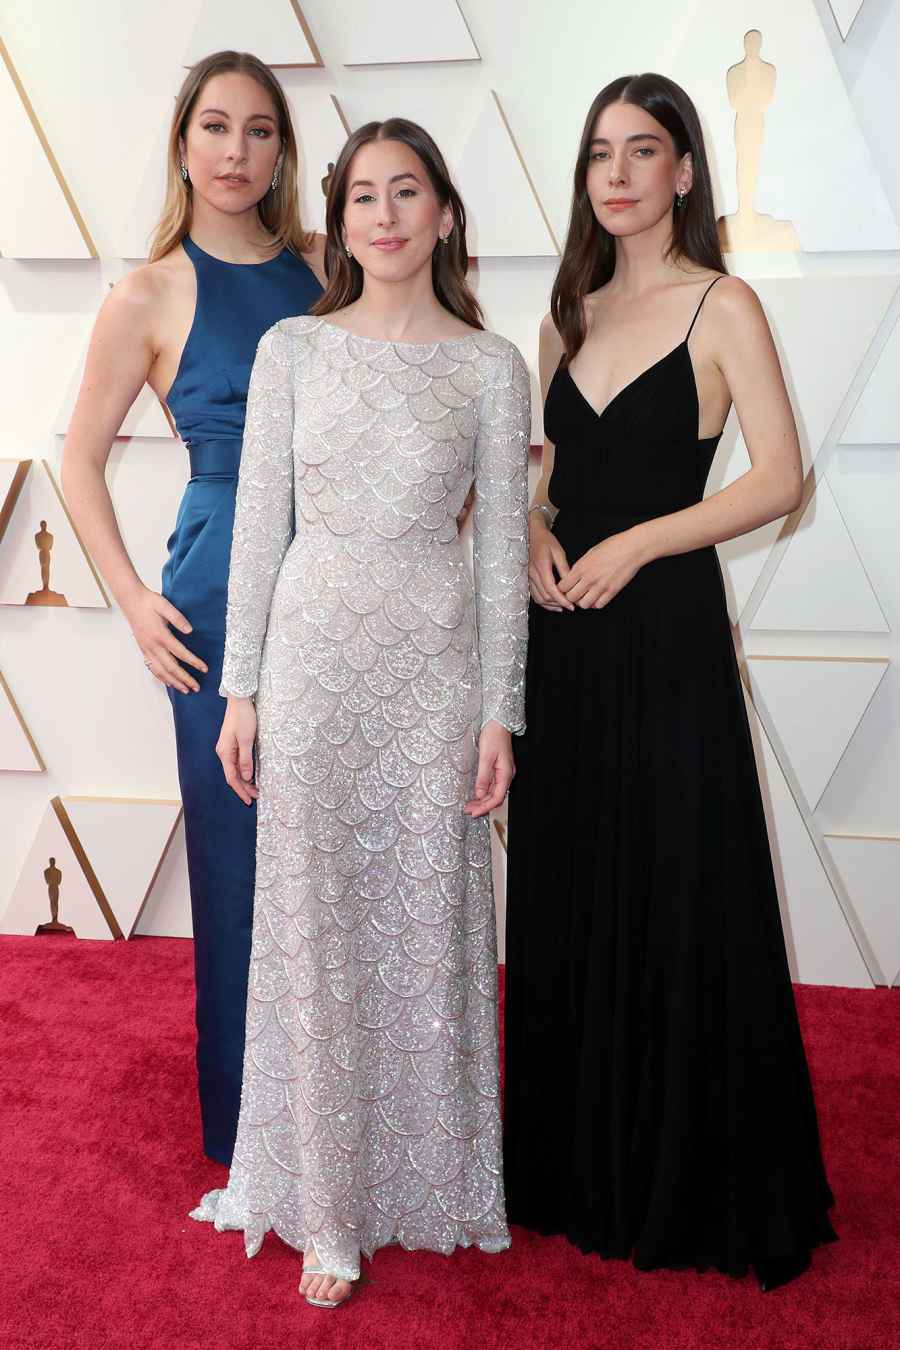 Este Haim, Alana Haim and Danielle Haim Family Members Oscars 2022